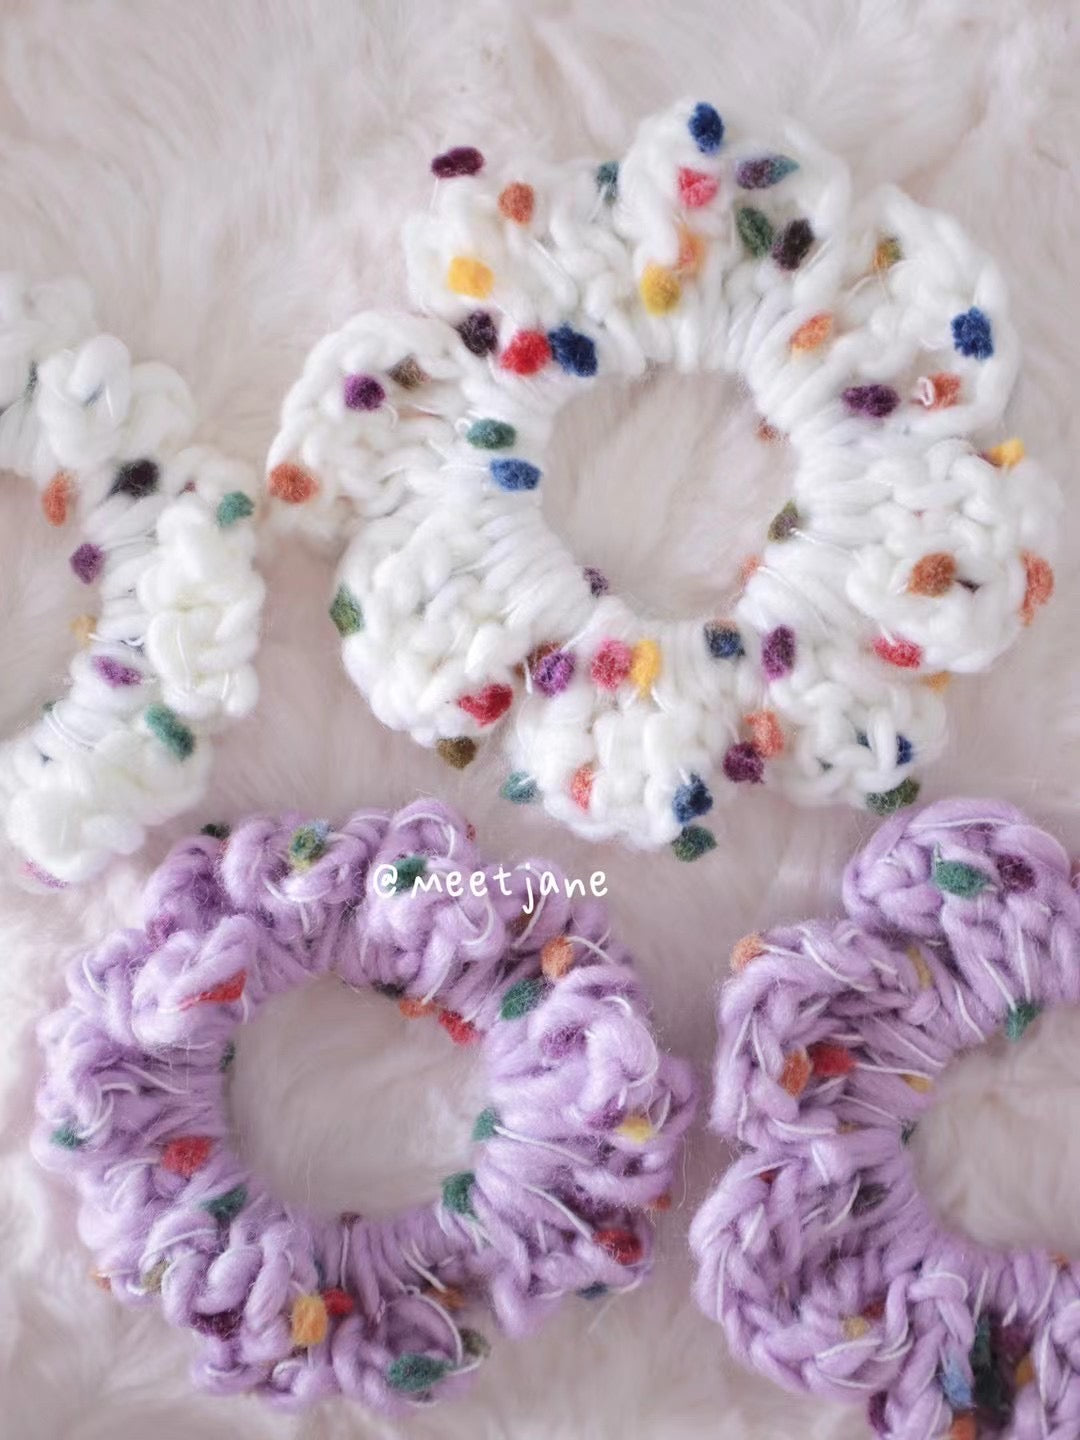 Crochet Workshop| Learn to crochet scrunchies 【1 session】Beginner friendly